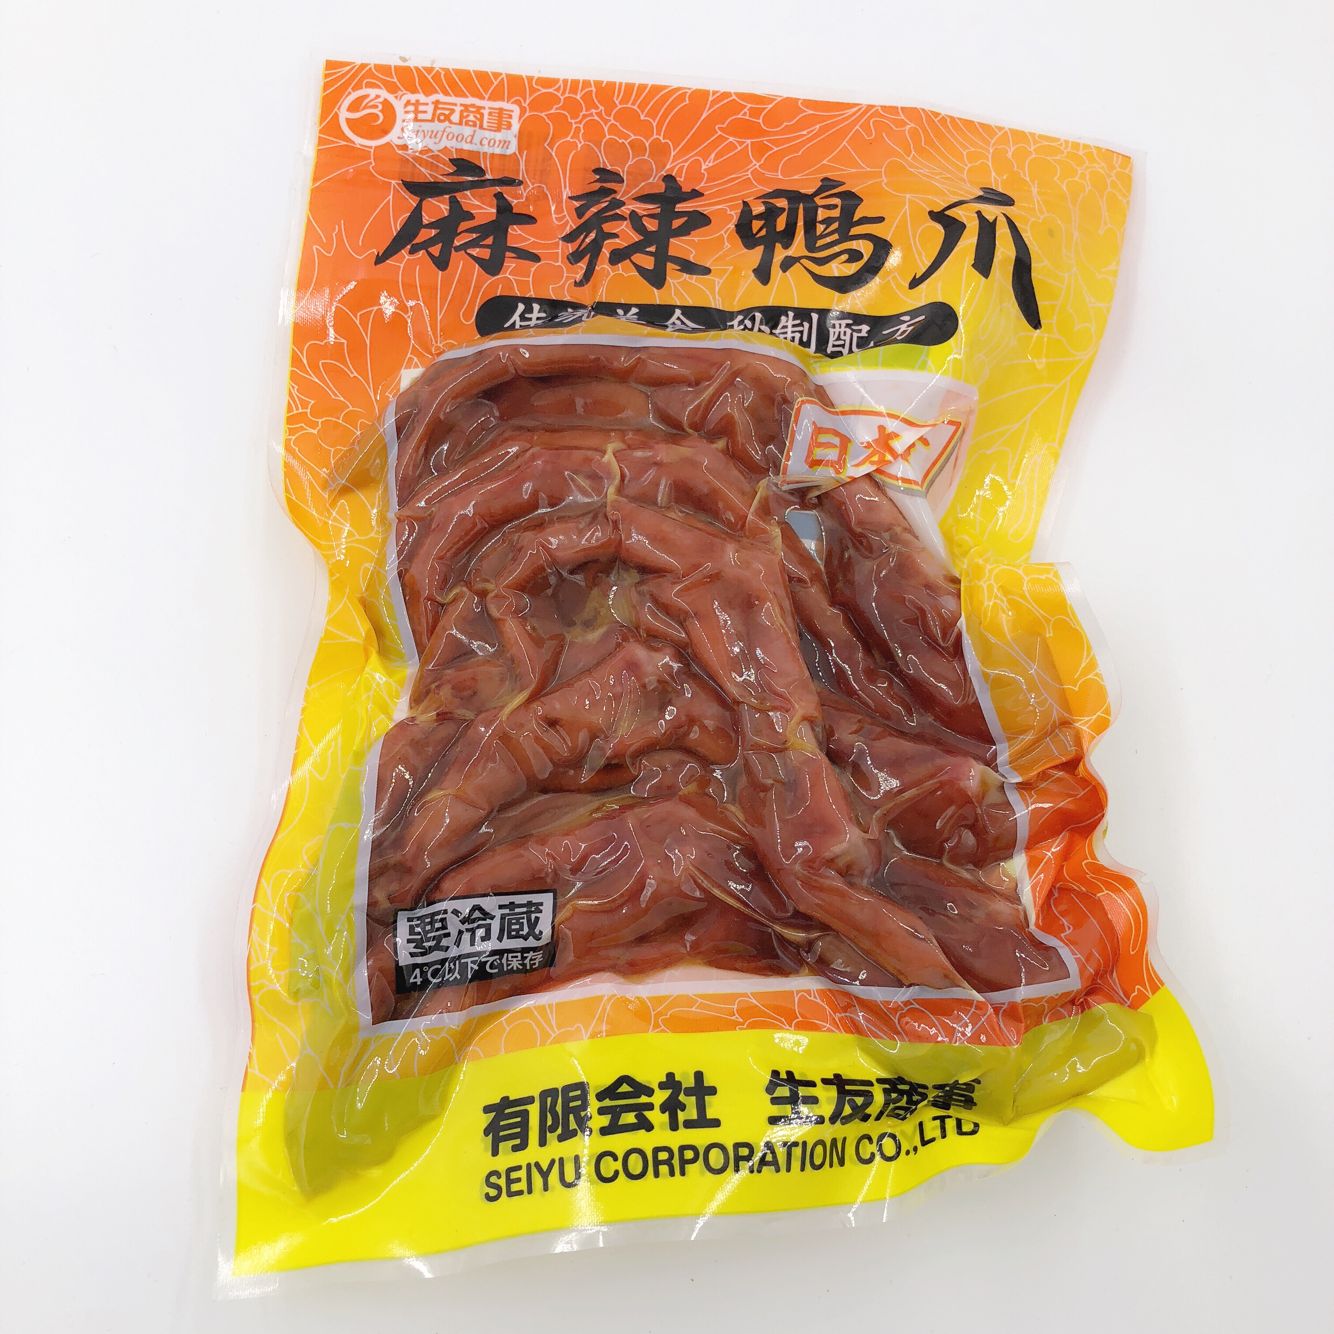 麻辣鴨爪6个入 鸭掌 賞味期限約10～15日間 日本国内加工 冷蔵品